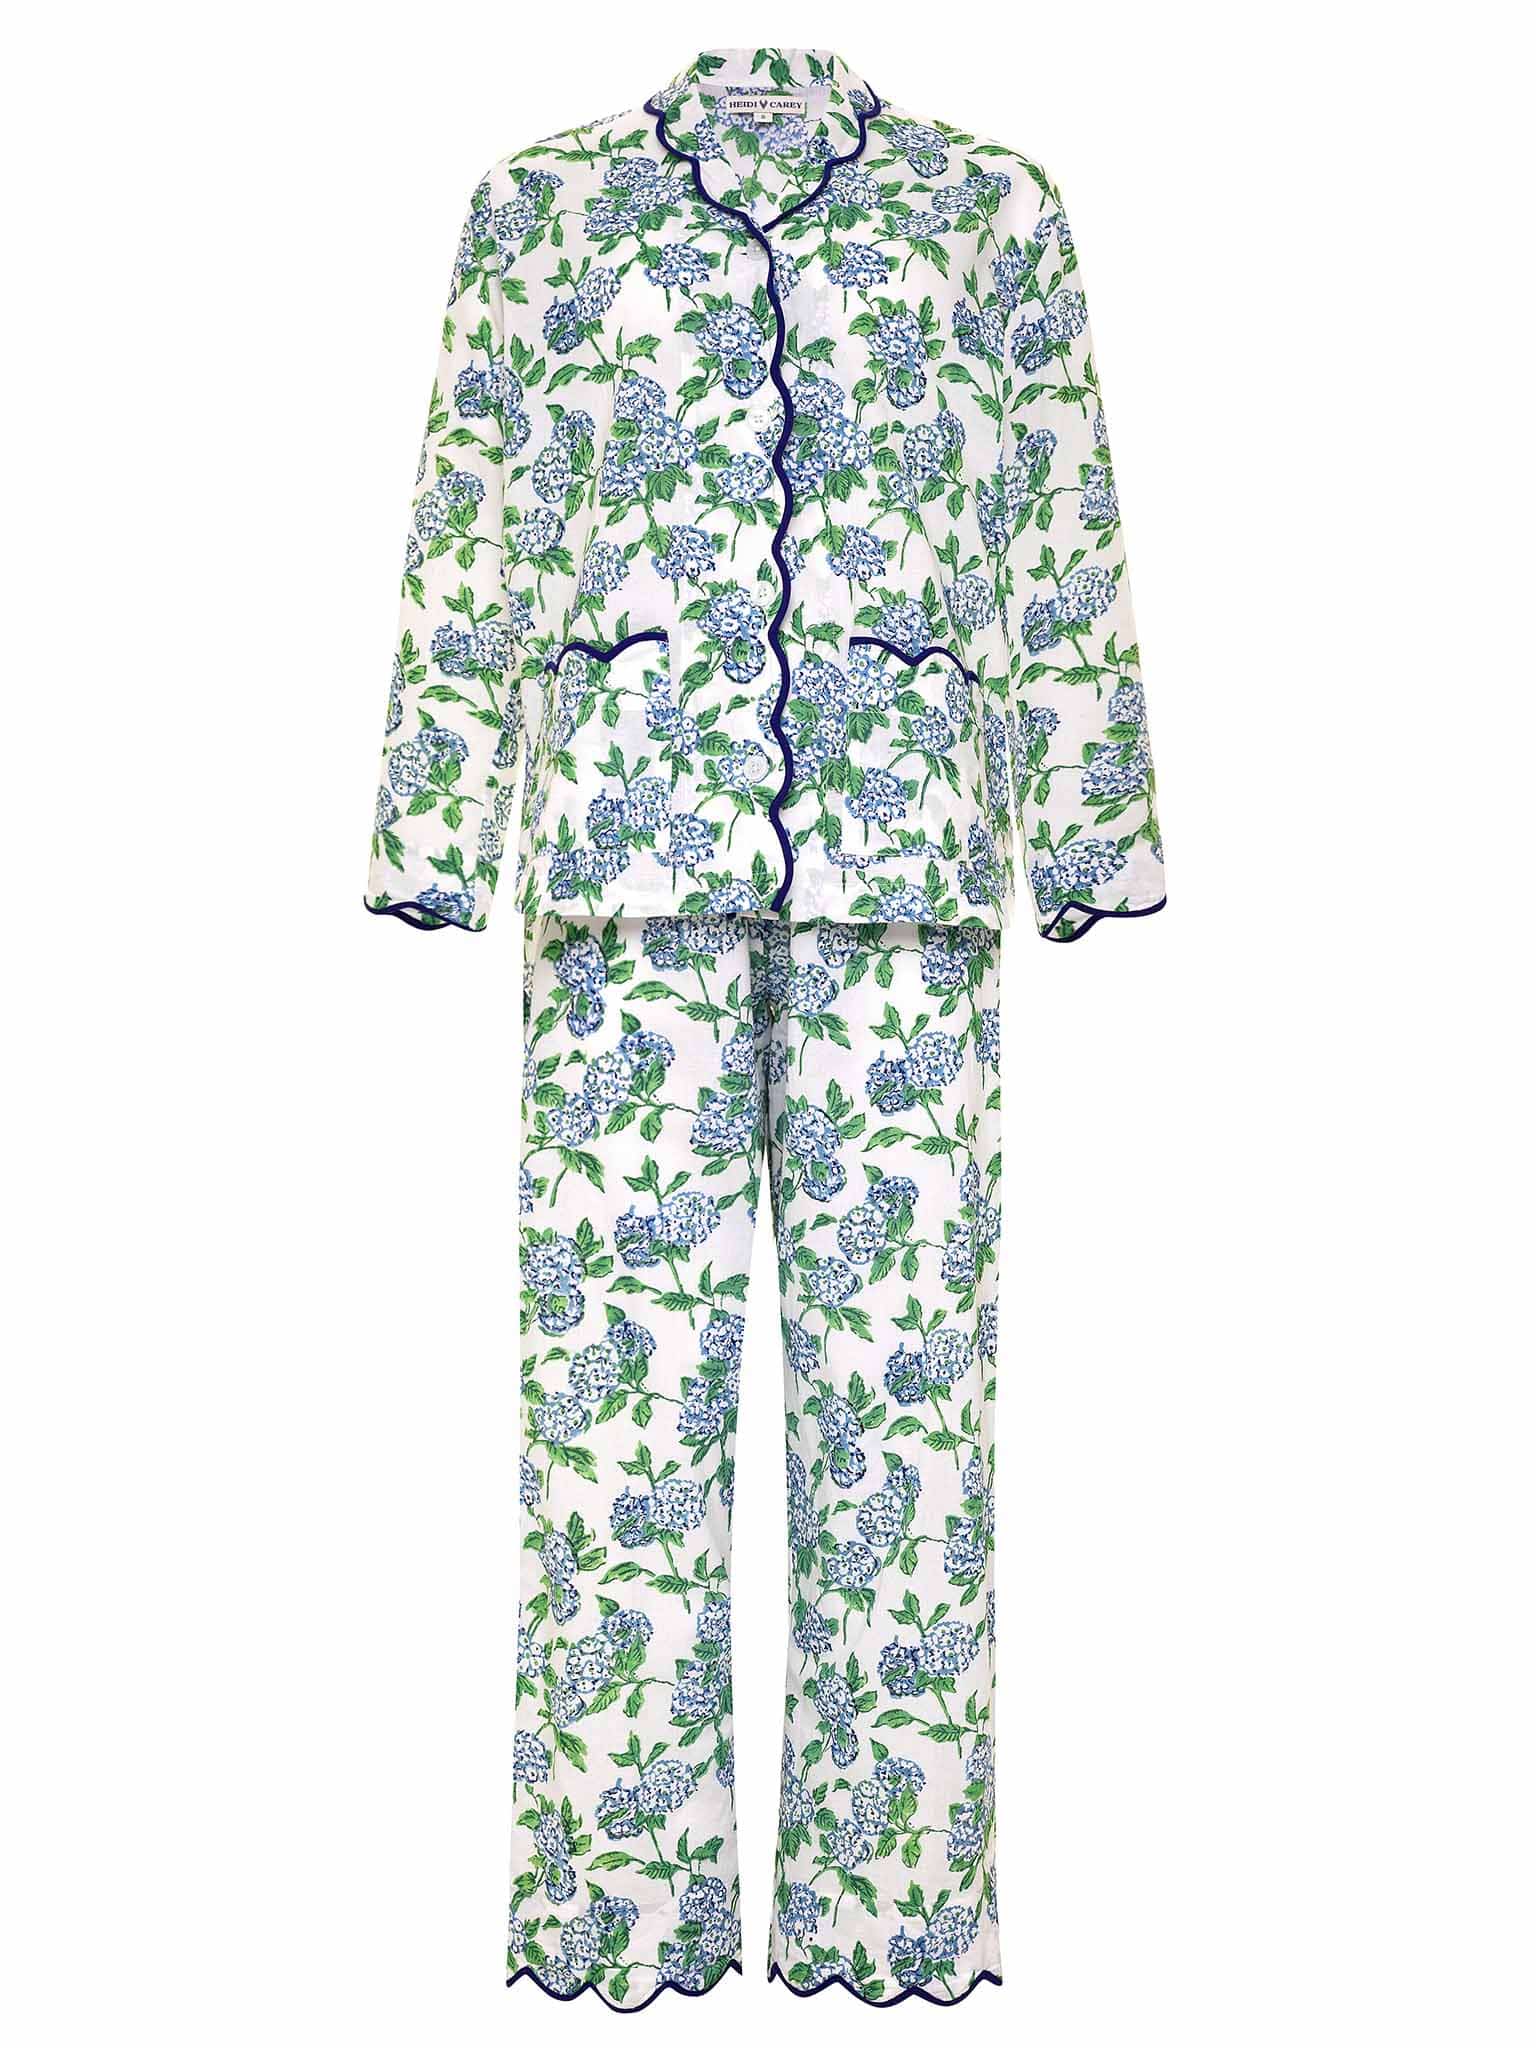 Image of Hydrangea Pajamas with Scalloping